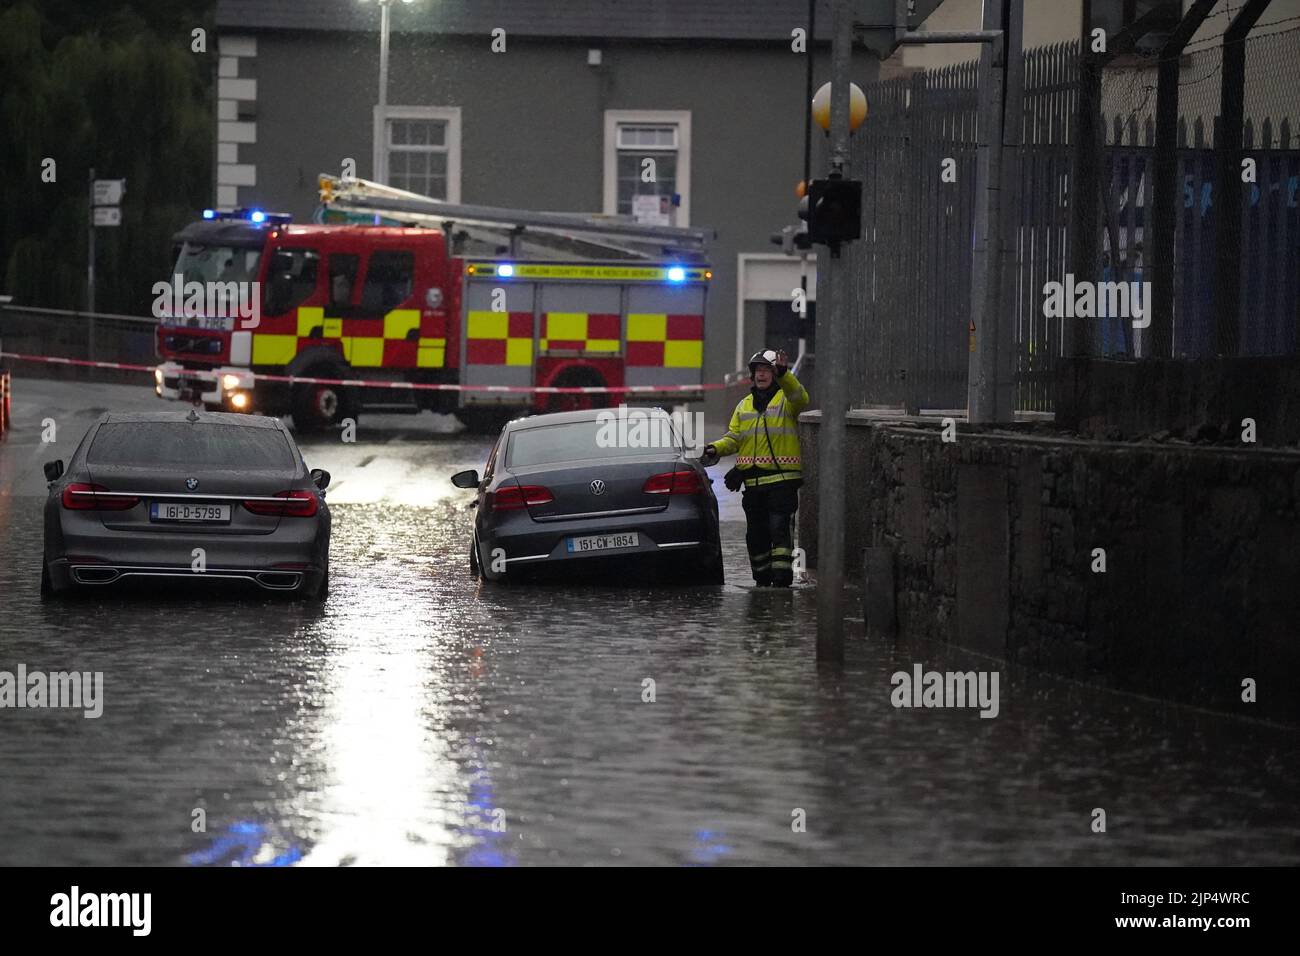 Inundaciones localizadas en Tullow, Co Carlow en la República de Irlanda. Fuertes lluvias e inundaciones han golpeado partes de la República de Irlanda, ya que las tormentas eléctricas marcaron el final de la ola de calor. Fecha de la foto: Lunes 15 de agosto de 2022. Foto de stock